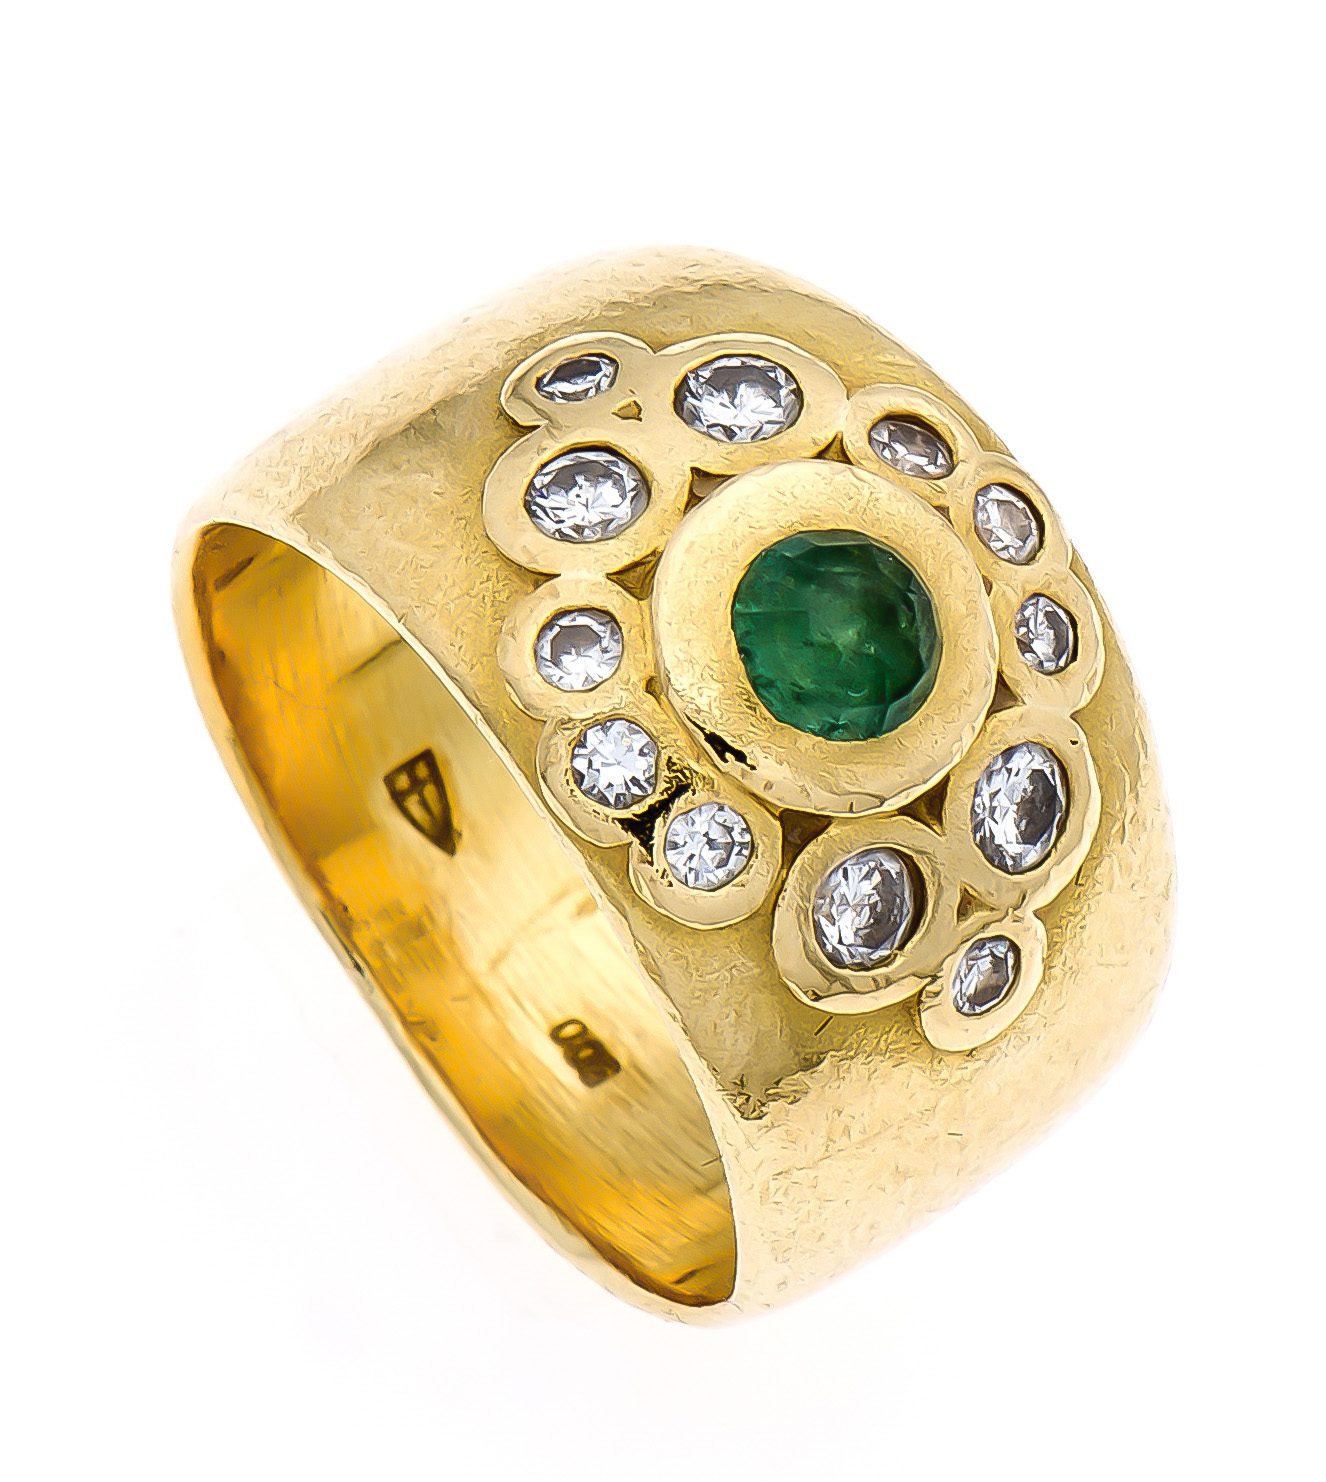 Smaragd-Altschliff-Diamant-Ring GG 900/000 mit einem feinen rund fac. Smaragd 3 mm in sehrguter